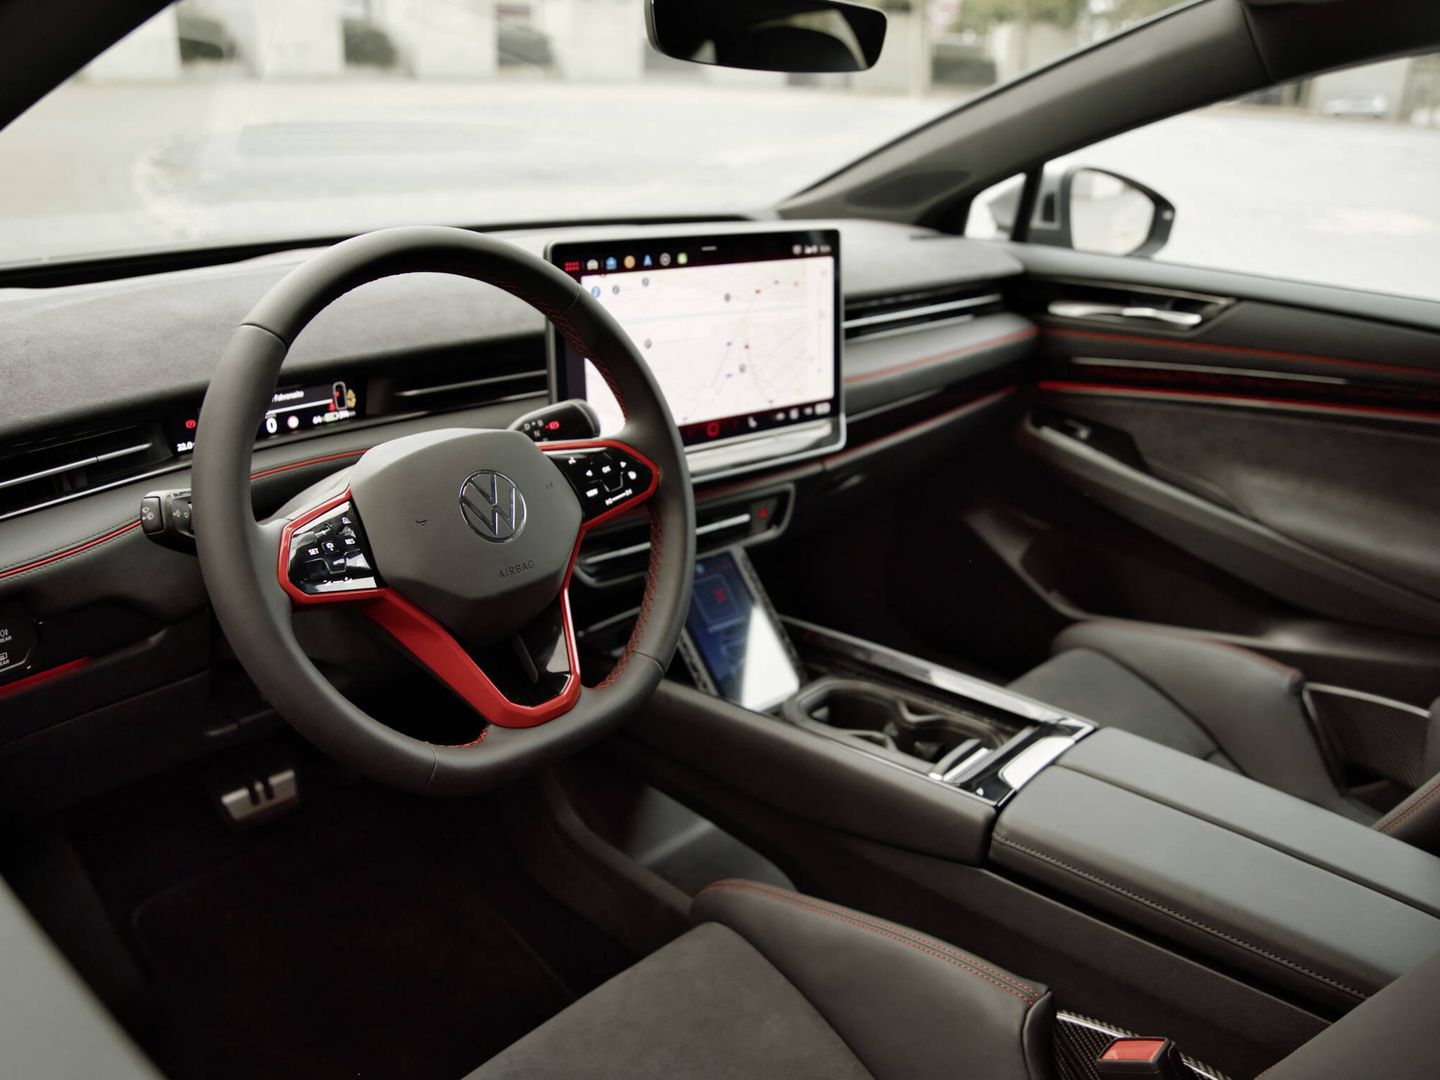 Bajo la pantalla central aparece otra pantalla de menores dimensiones, inédito en Volkswagen.